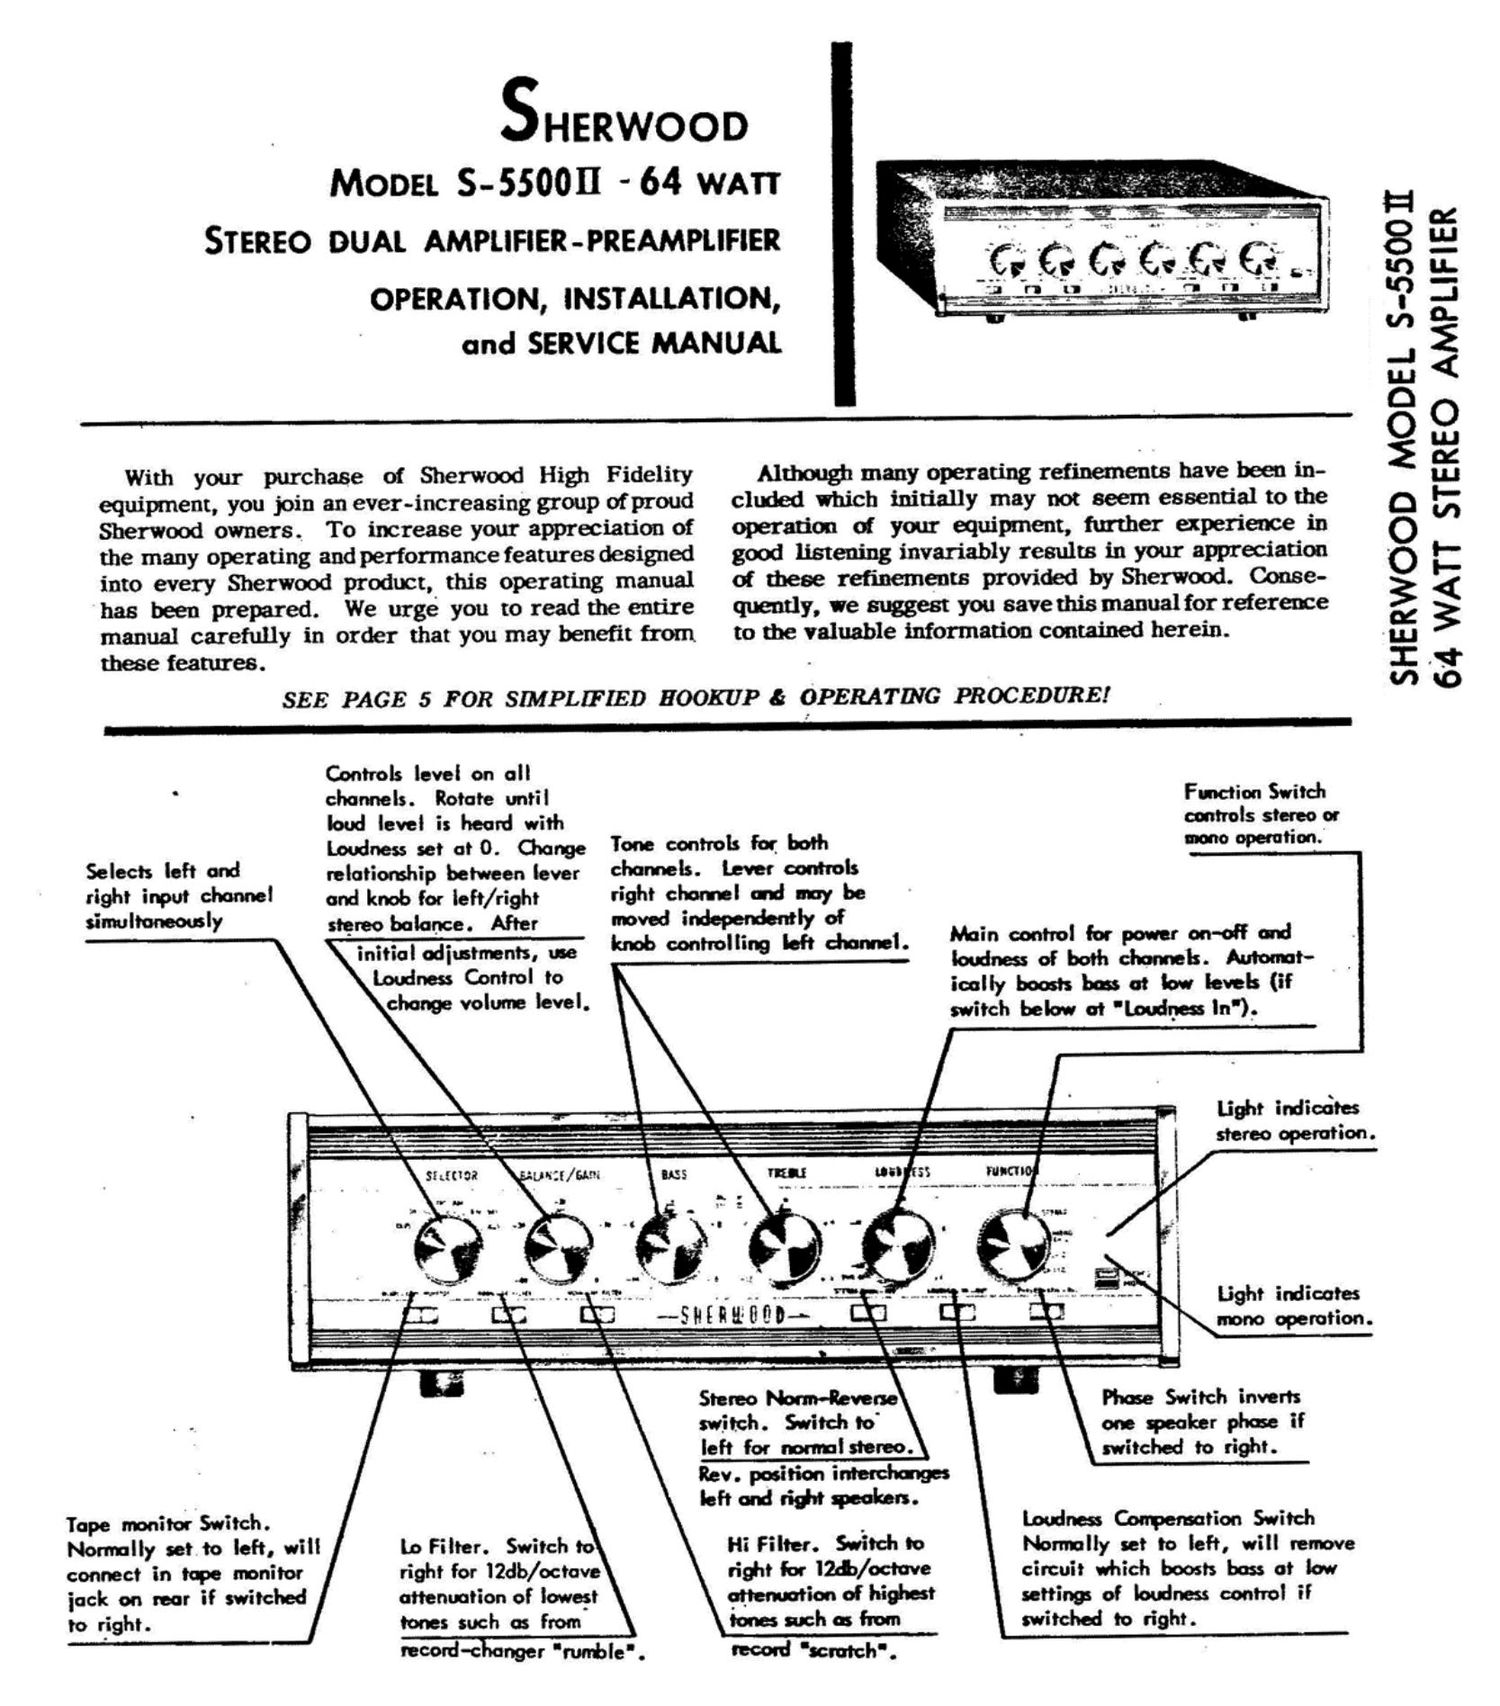 Sherwood S 5500 II Service Manual